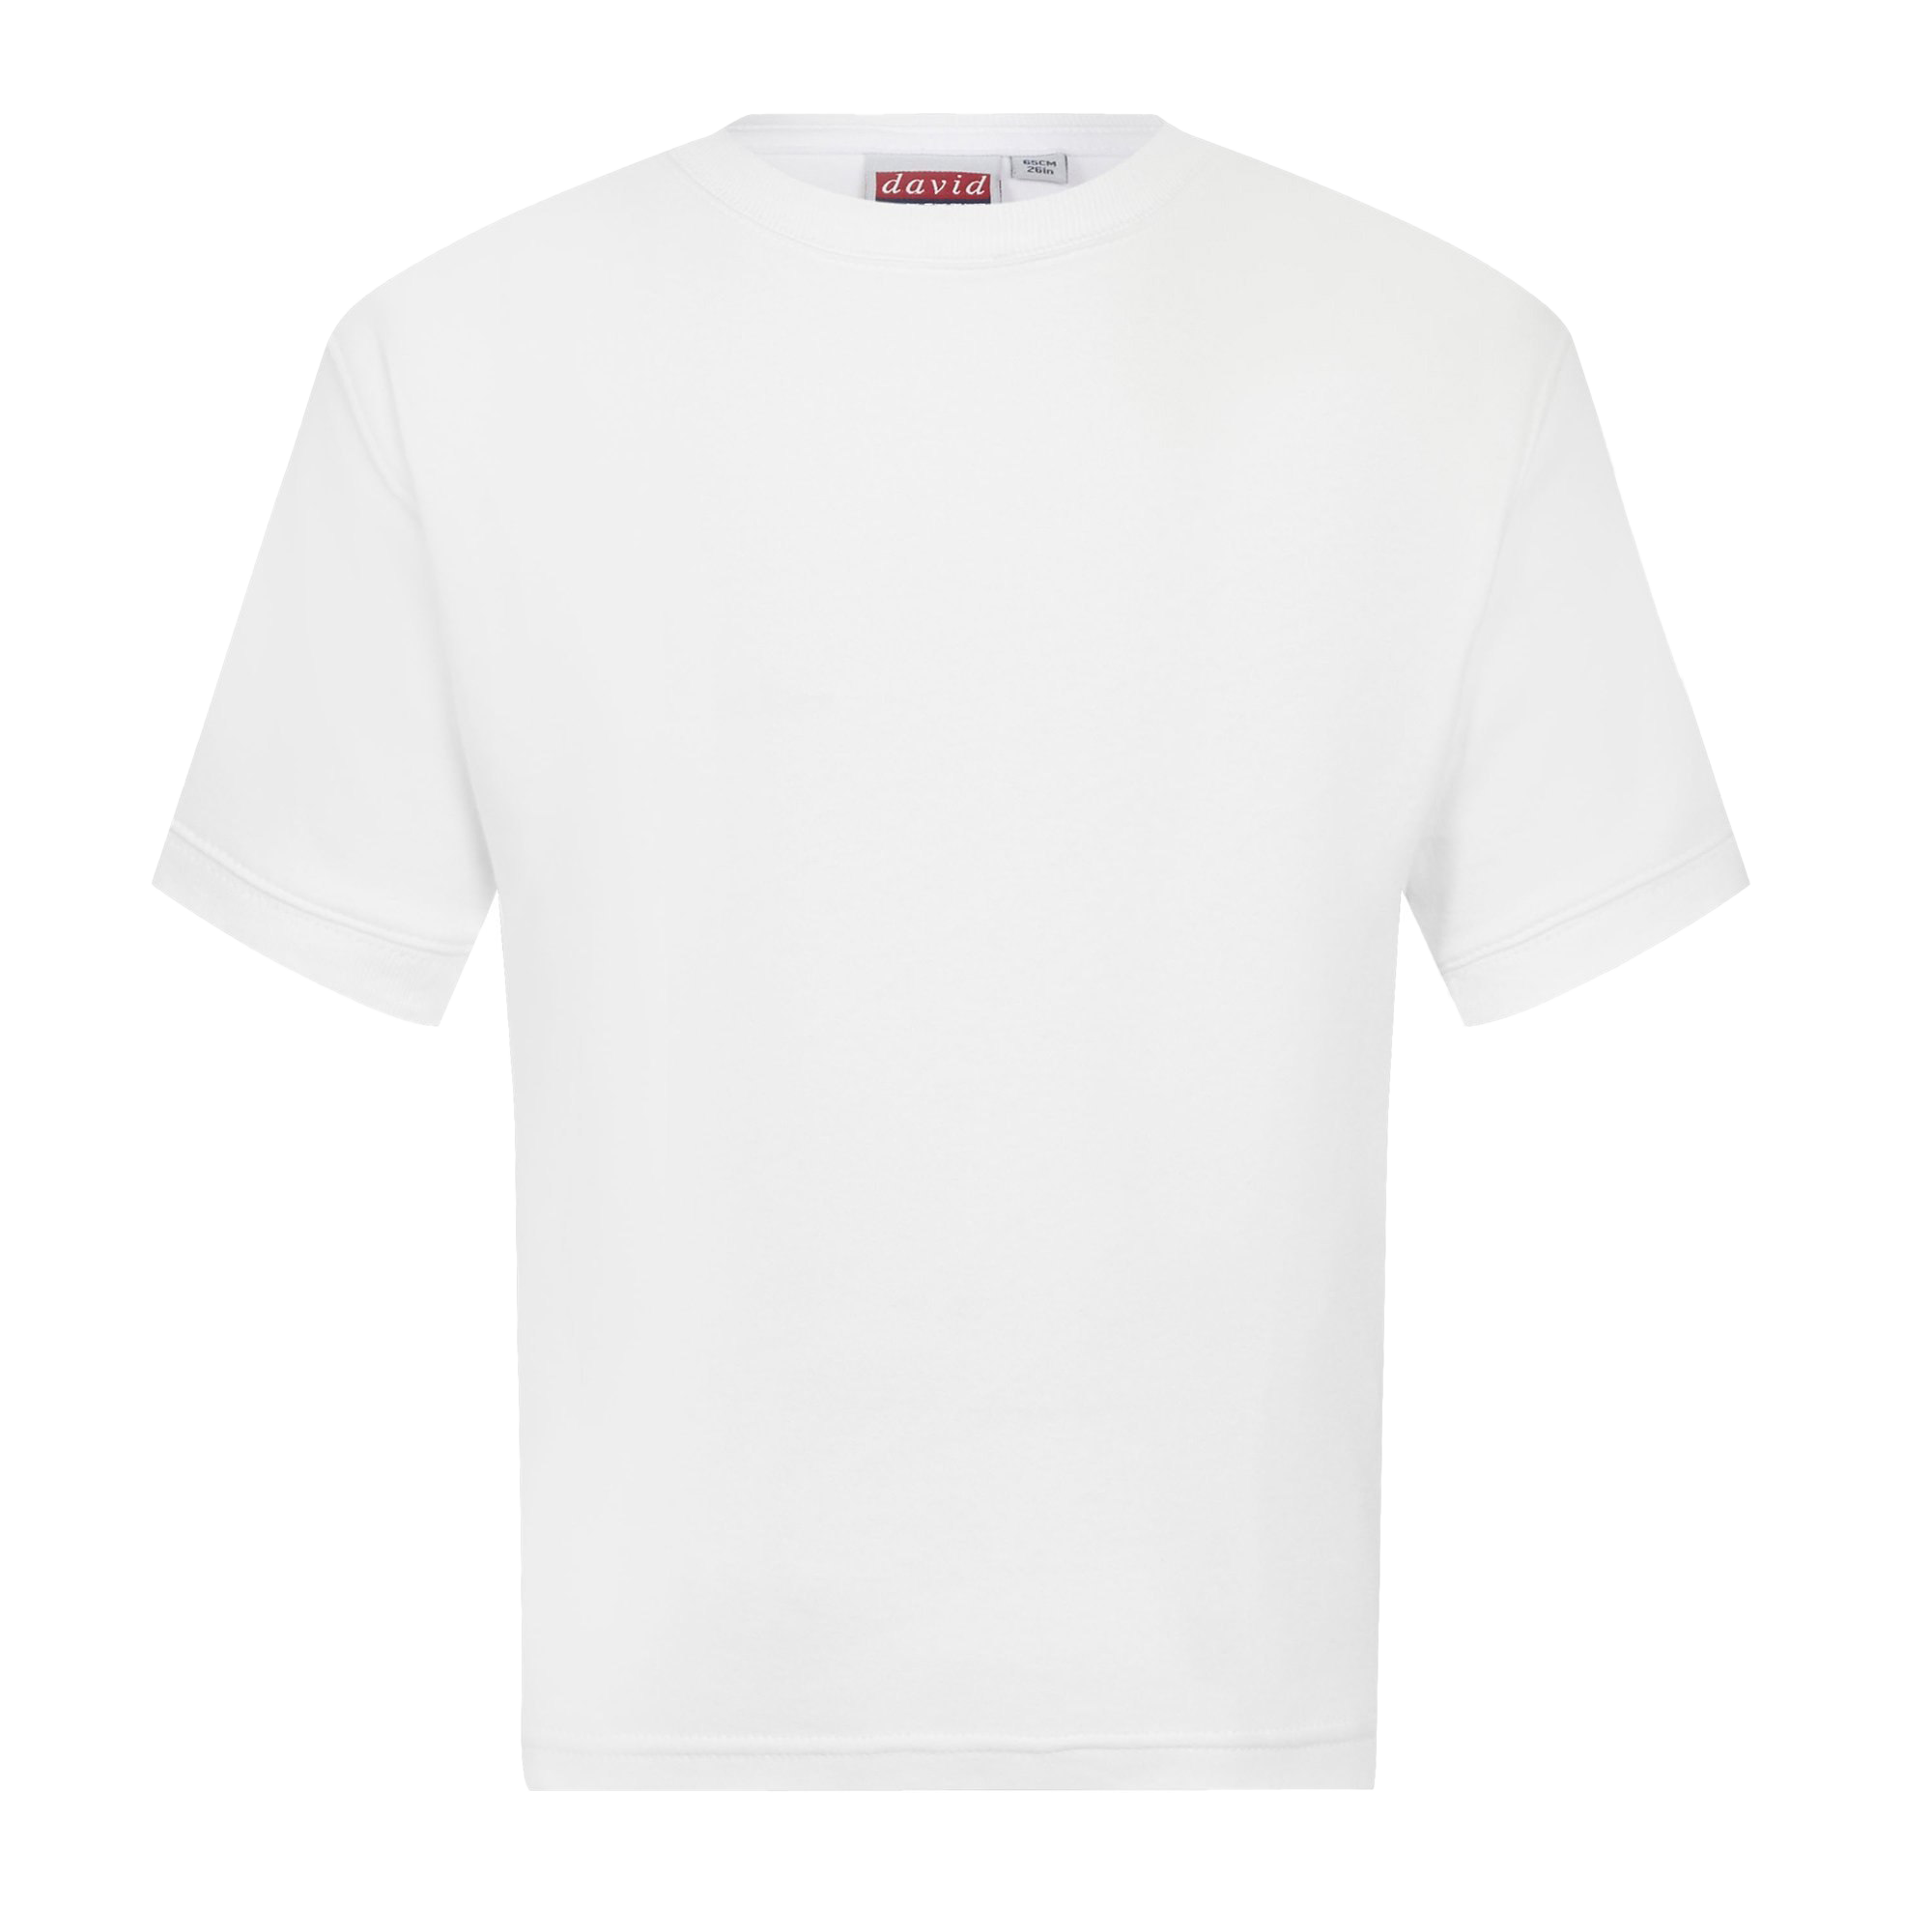 Простые белые футболки - 94 фото